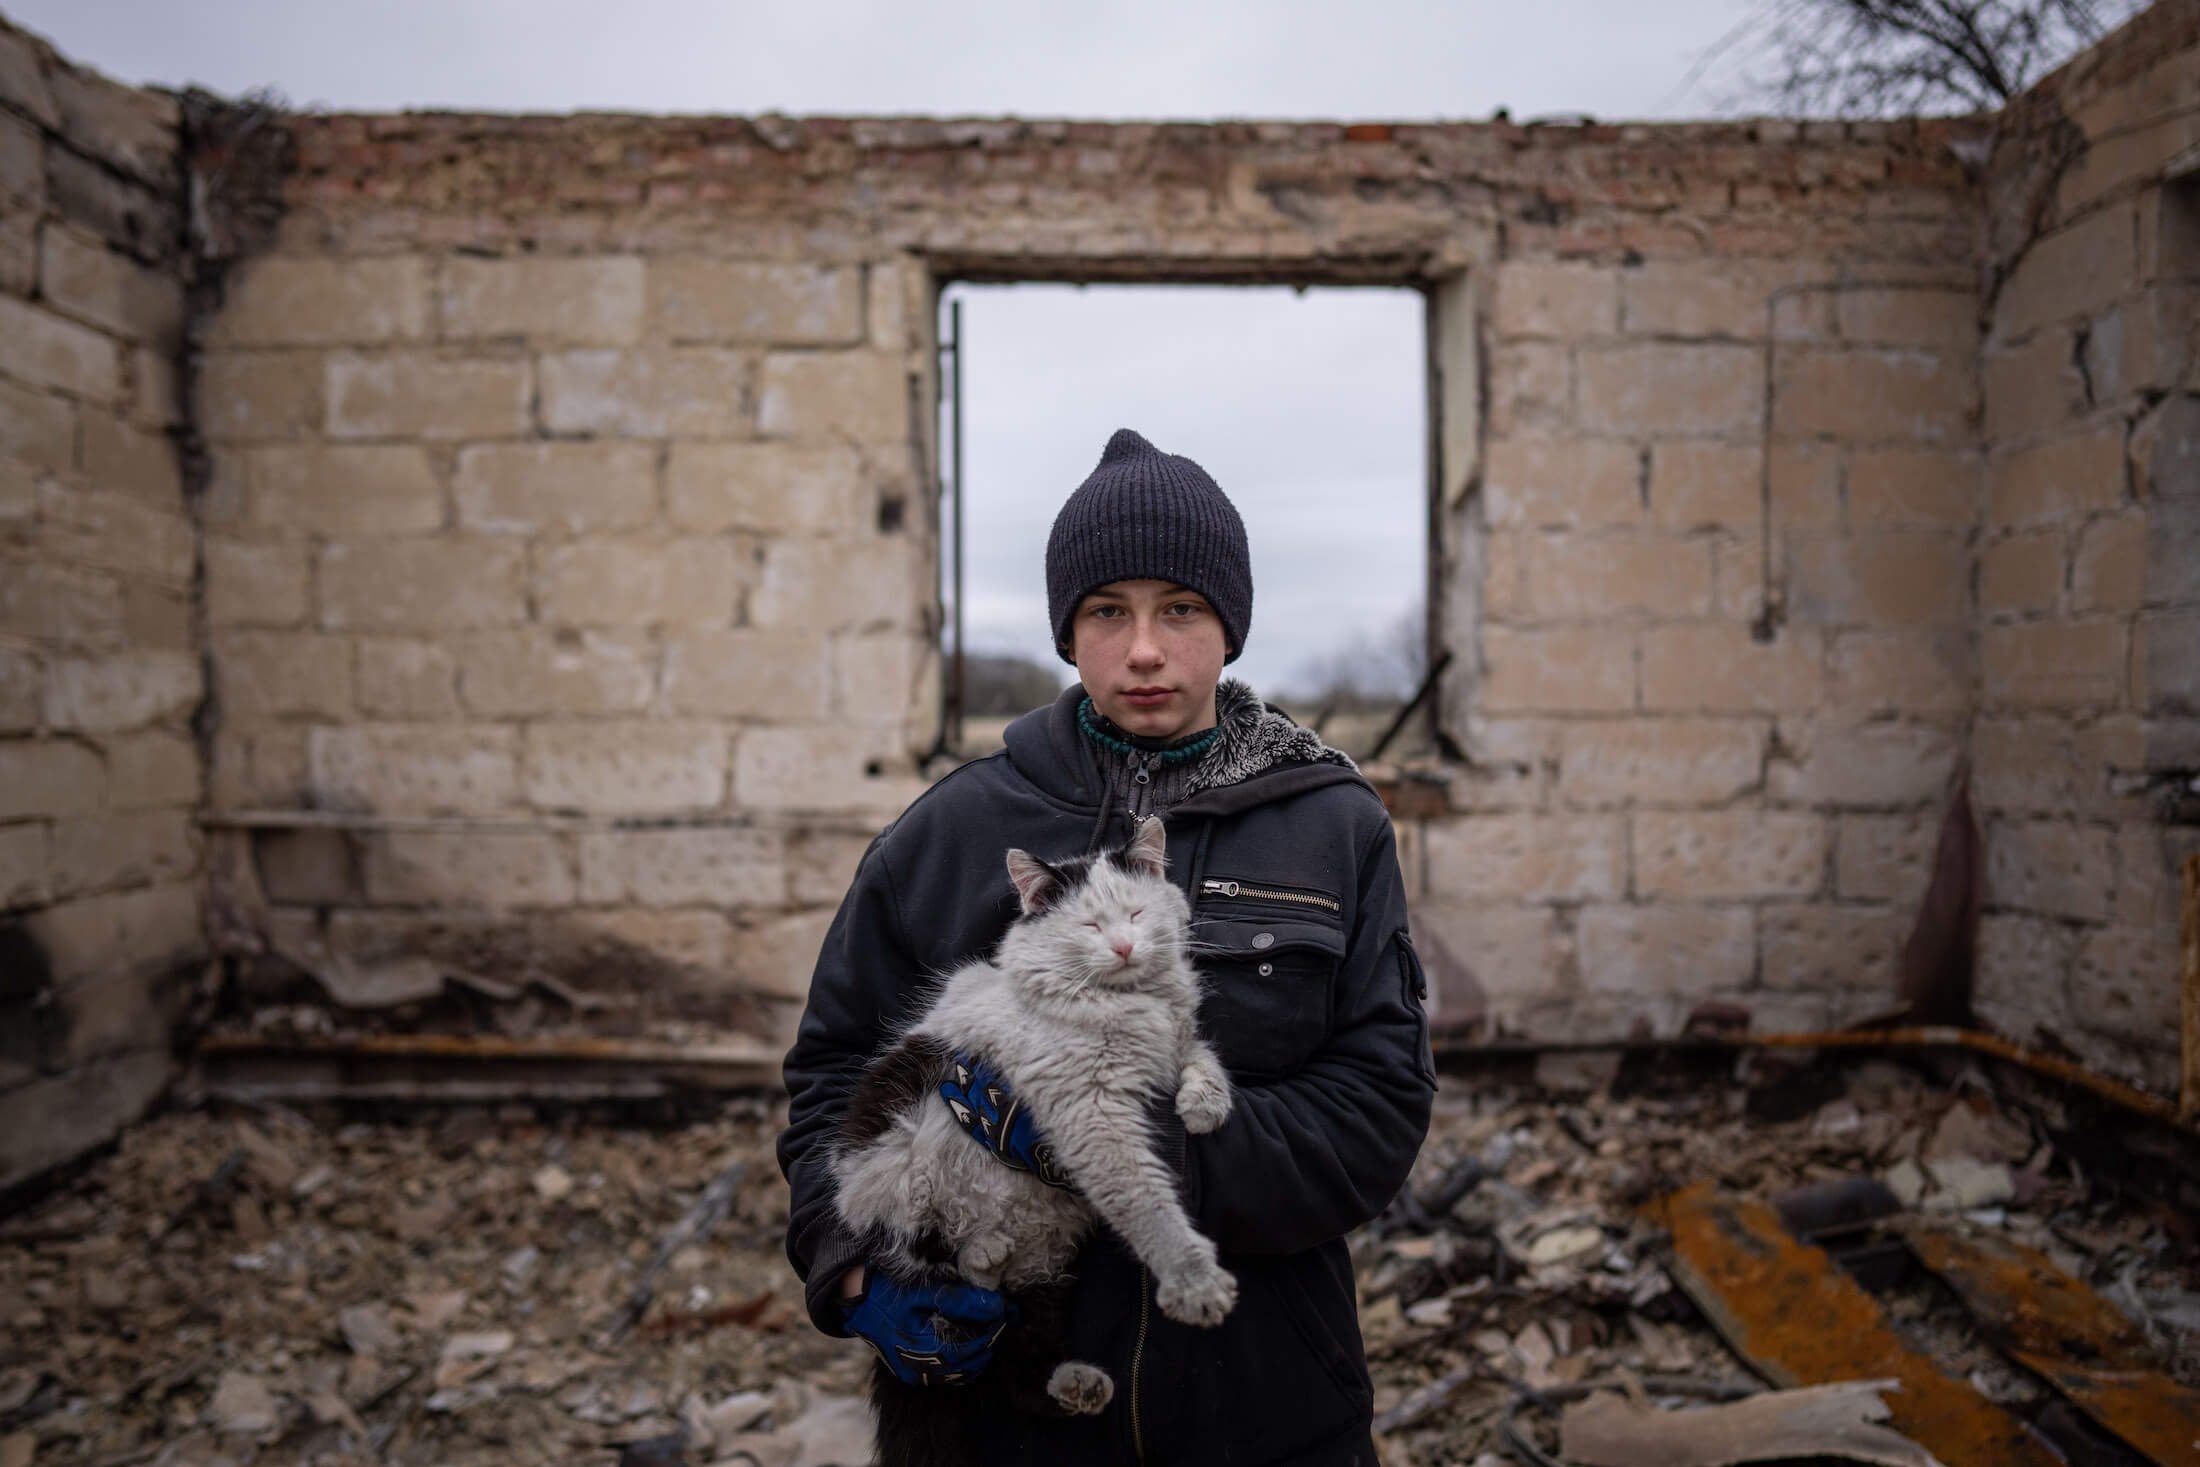 12-річний Данік Рак з котом на руках стоїть на уламках свого будинку, який був зруйнований внаслідок обстрілу російськими військовими. Після обстрілу матері Даніка ампутували ногу. Вона також зазнала поранення черевної порожнини. Чернигів, 13 квітня 2022 р.